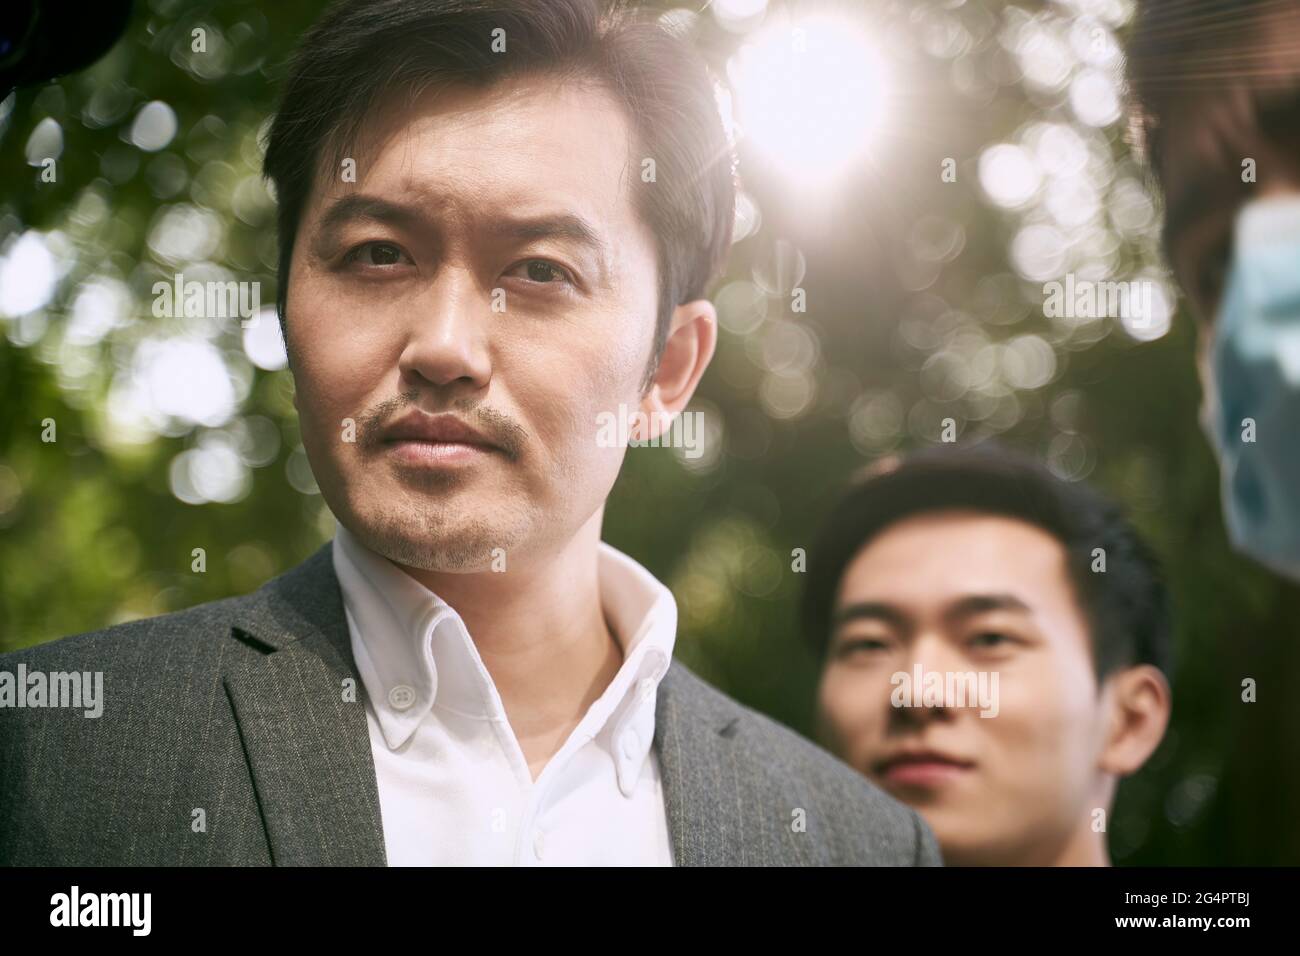 homme d'affaires asiatique regardant la caméra avec une drôle d'expression faciale Banque D'Images